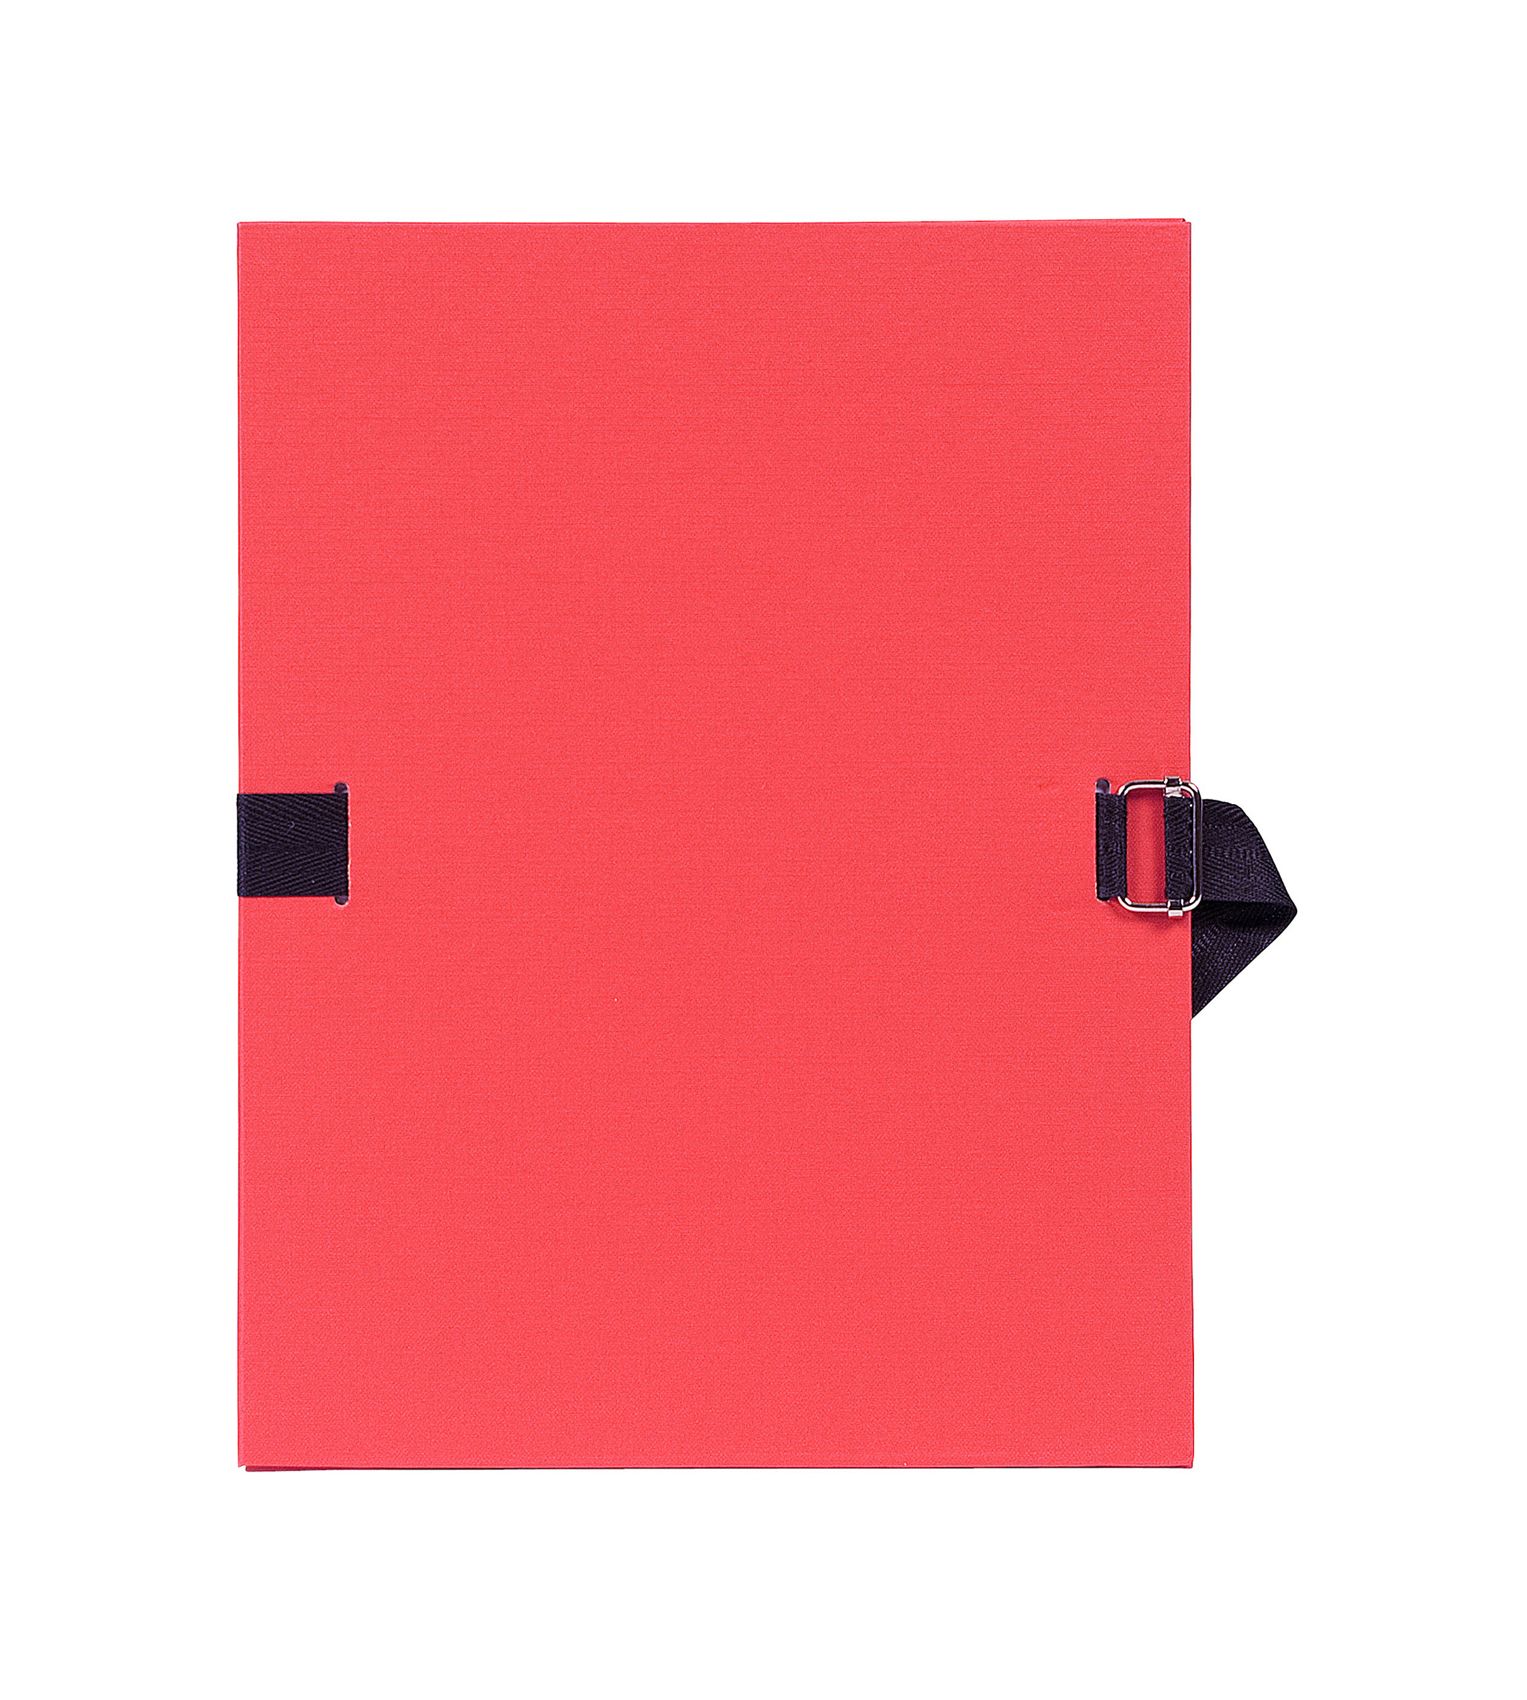 Chemise à élastiques en carton format A4 - EXACOMPTA - couleurs